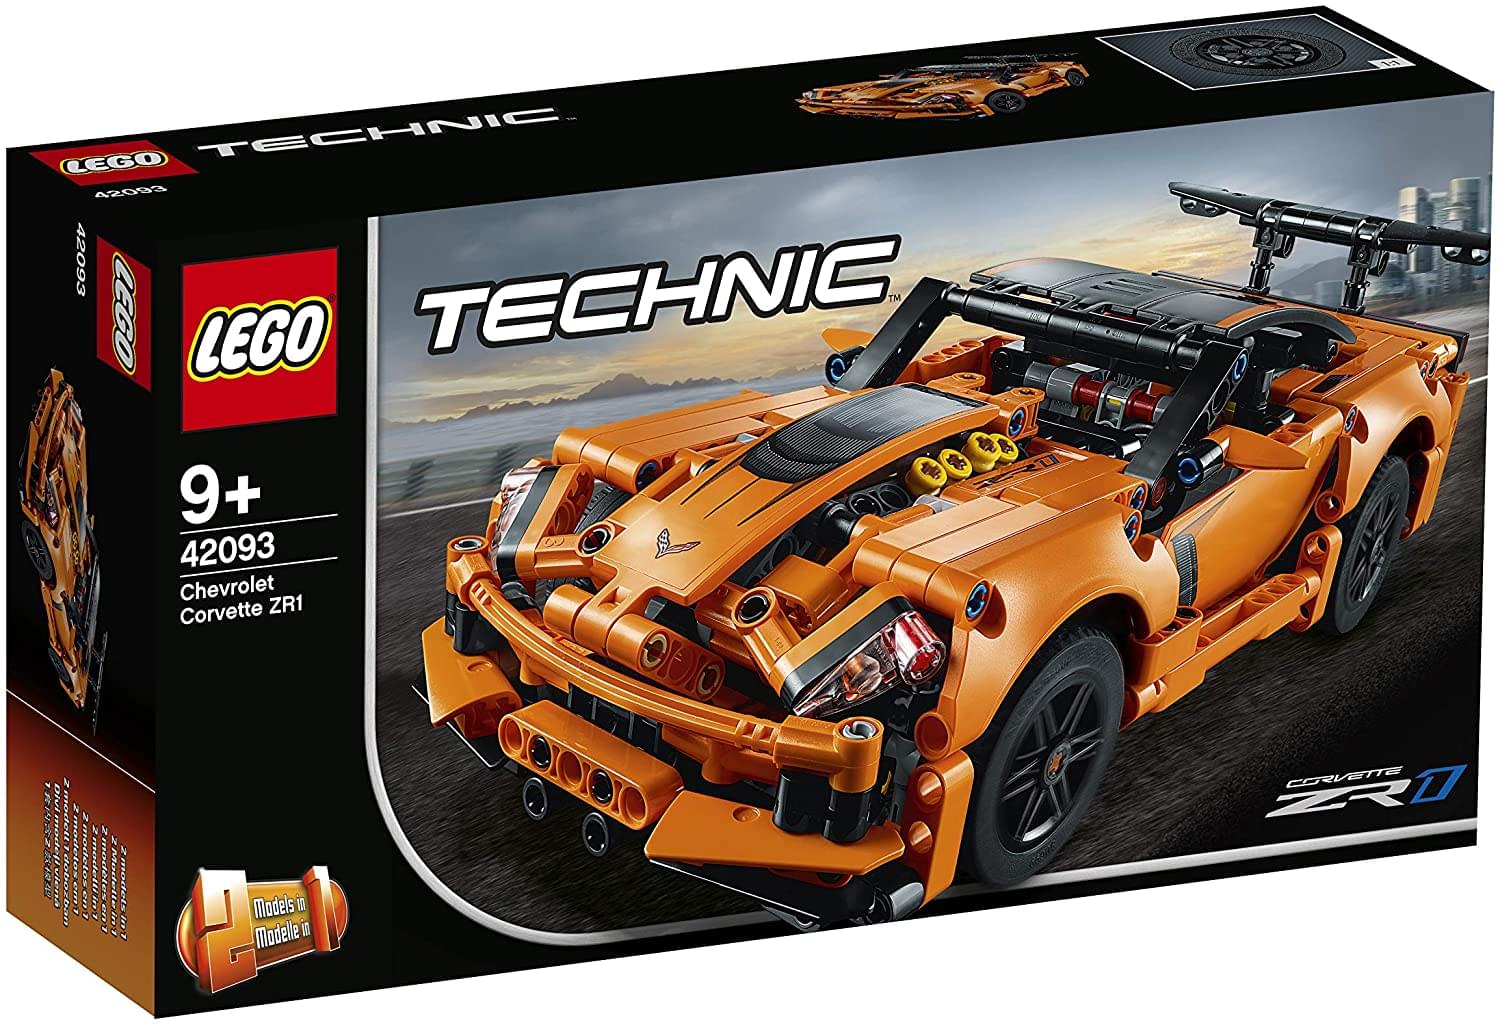 LEGO Technic 42093 Chevrolet Corvette ZR1 579 Piece Building Kit